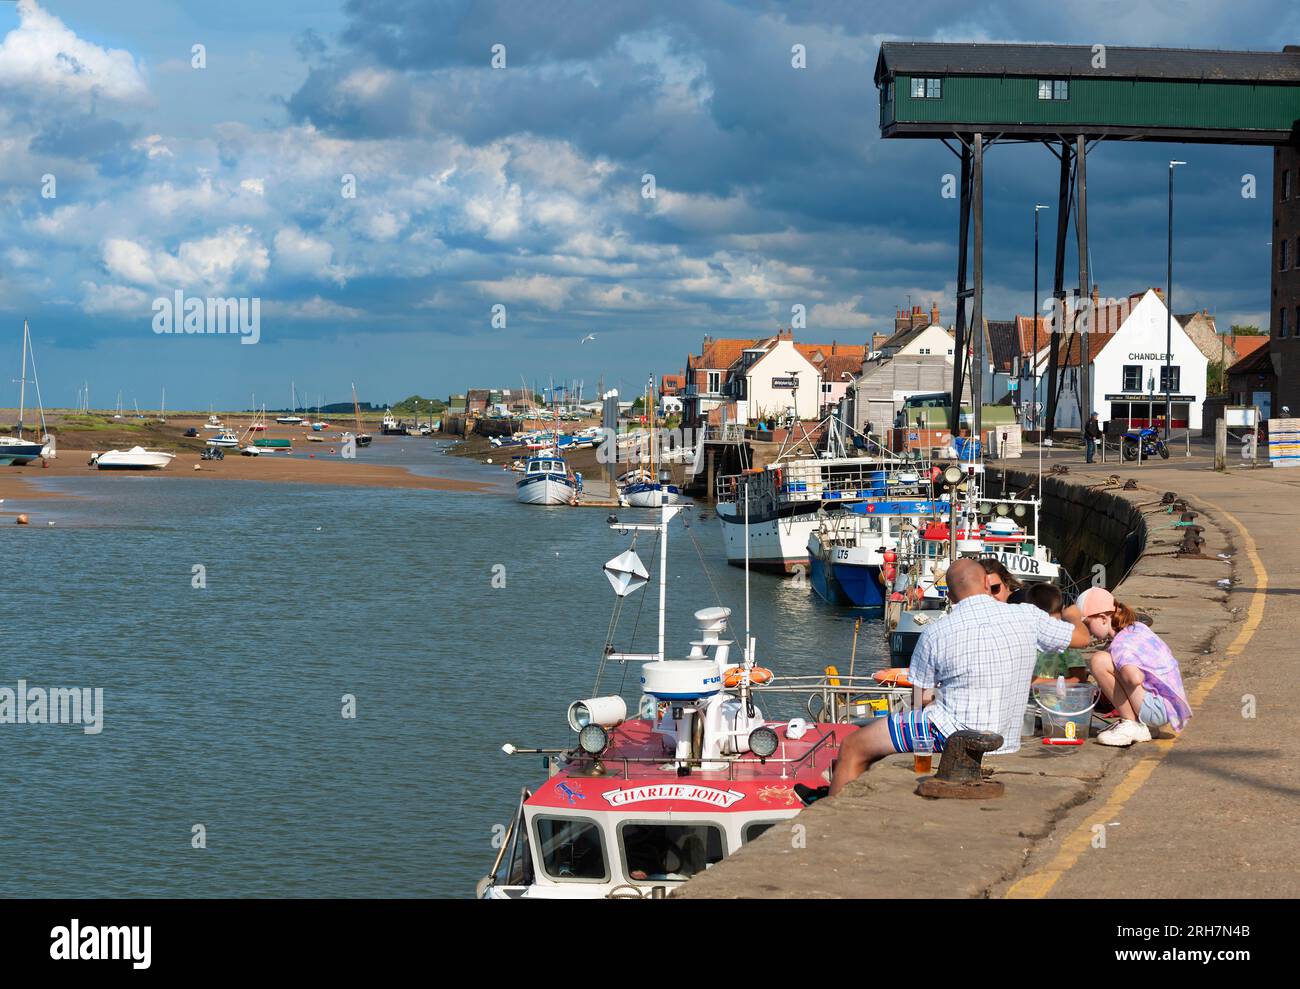 La famiglia si imbarca sulla banchina nella città di villeggiatura di Wells-Next-the-Sea con le sue barche da pesca ormeggiate lungo la bassa marea. Norfolk, Inghilterra Foto Stock